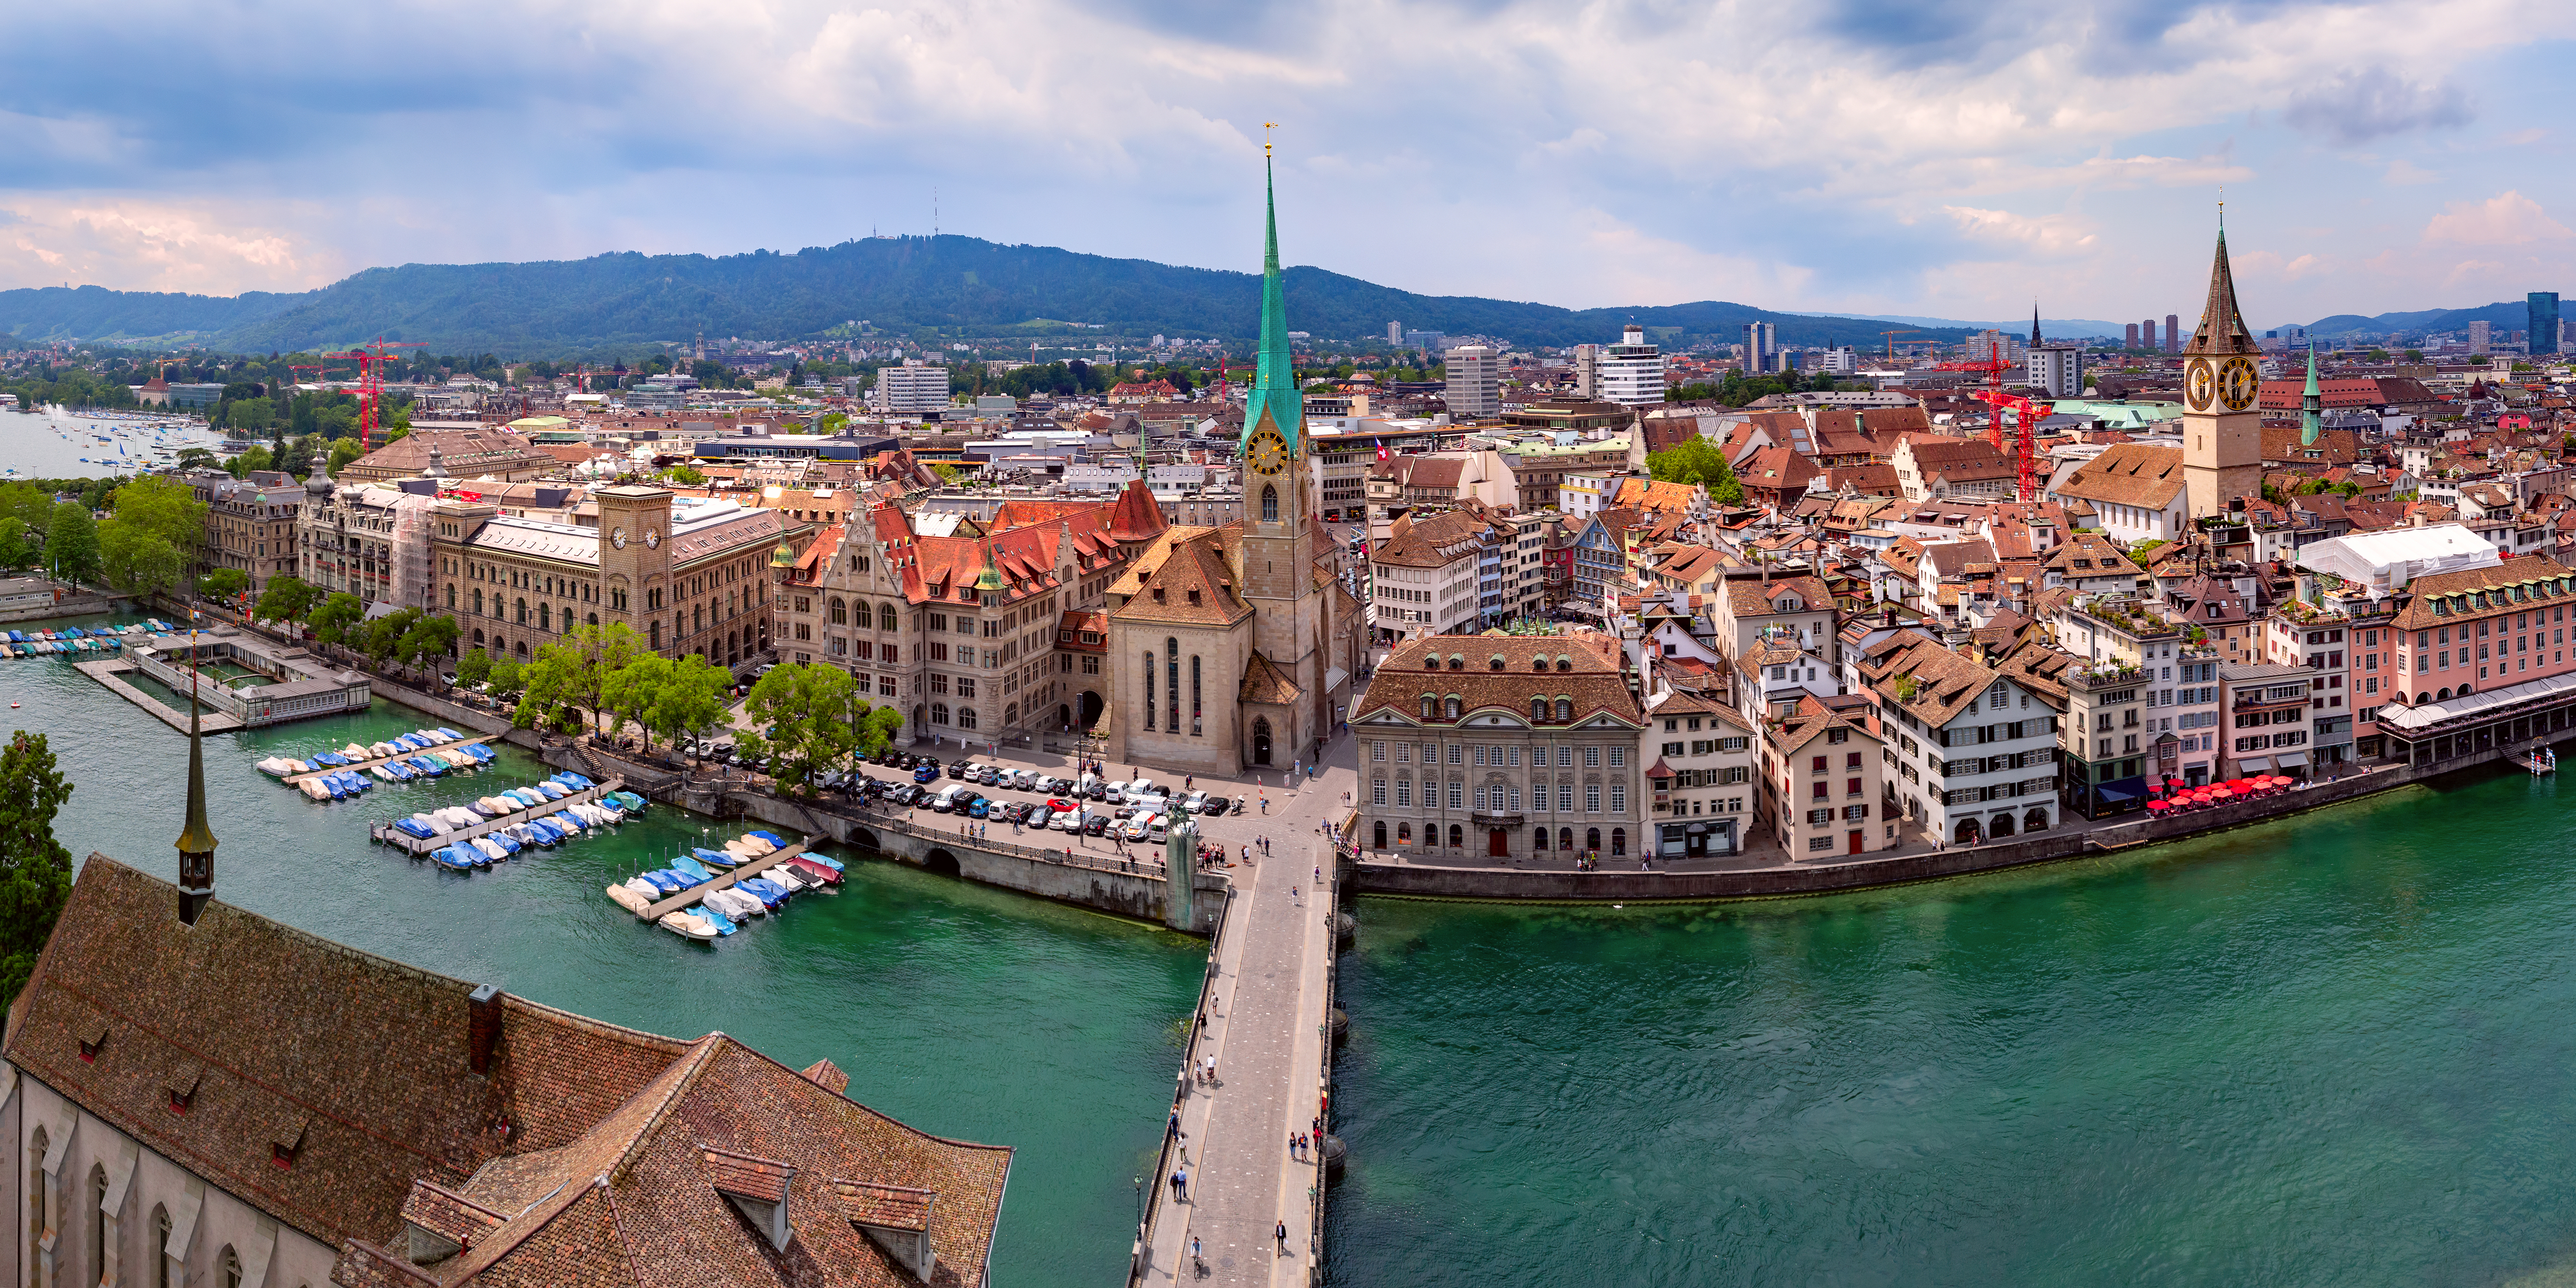 Independent escorts in Switzerland: Where to work in Zürich?